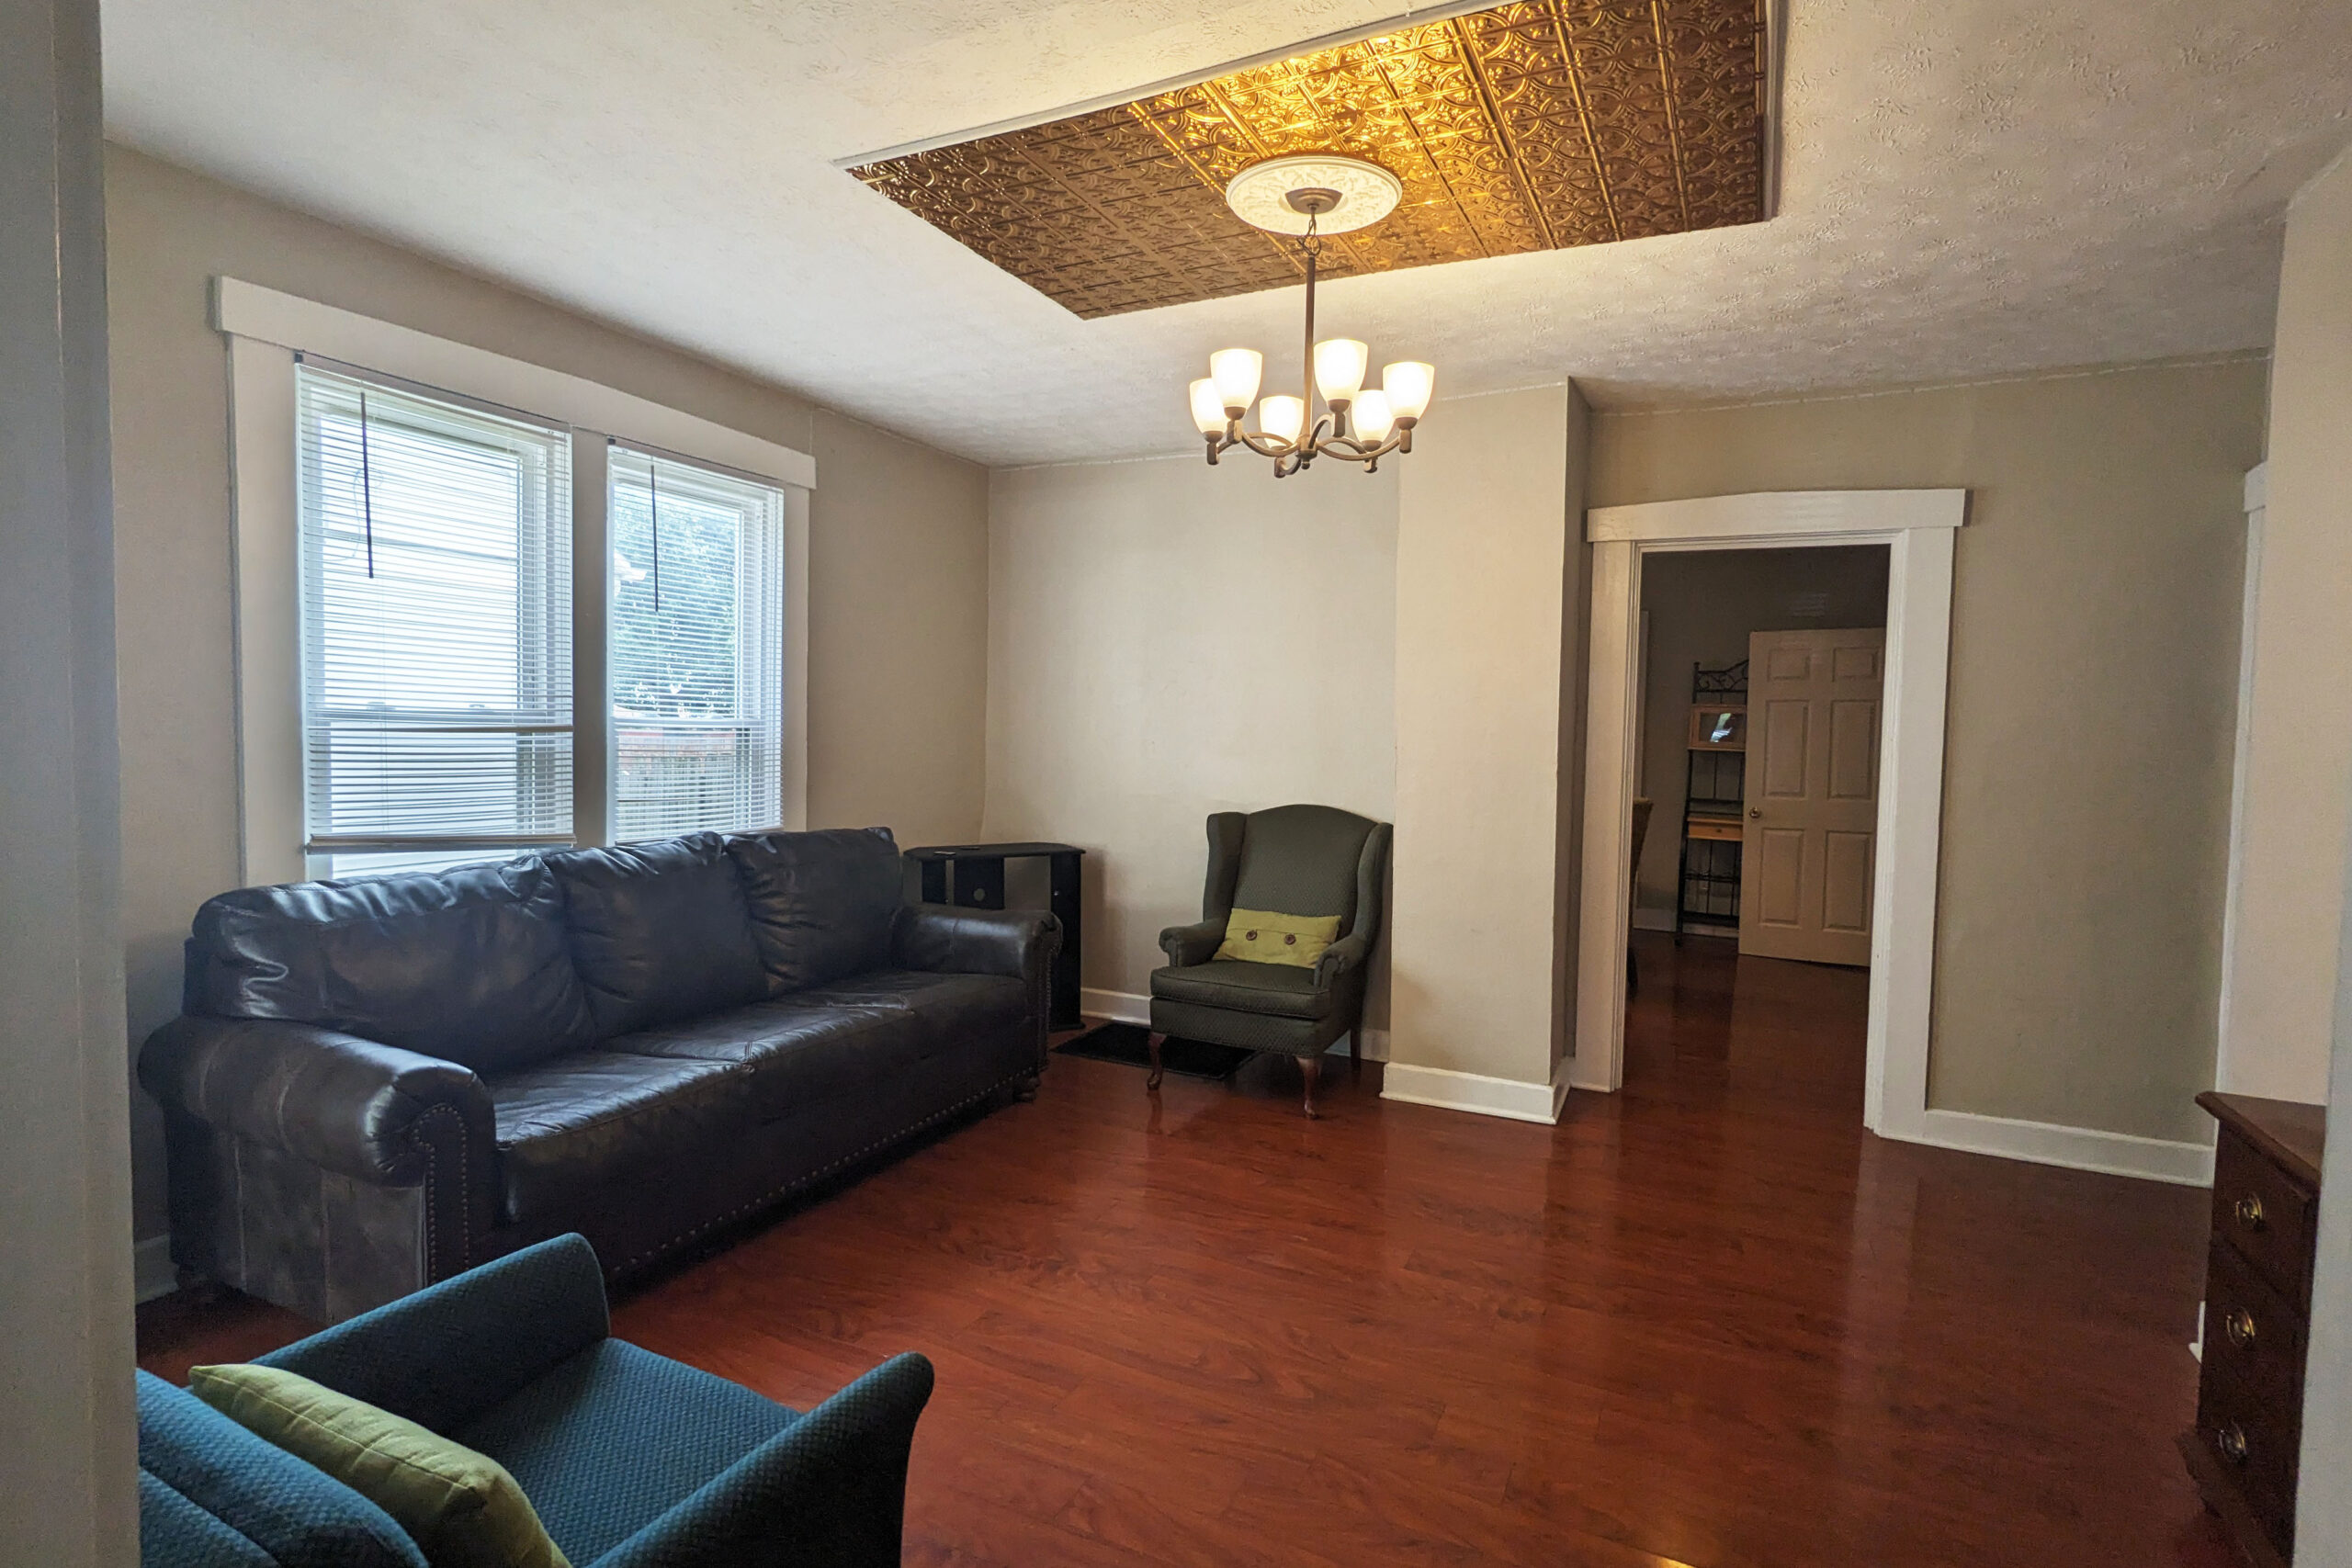 Living room at 44 Jasper St.